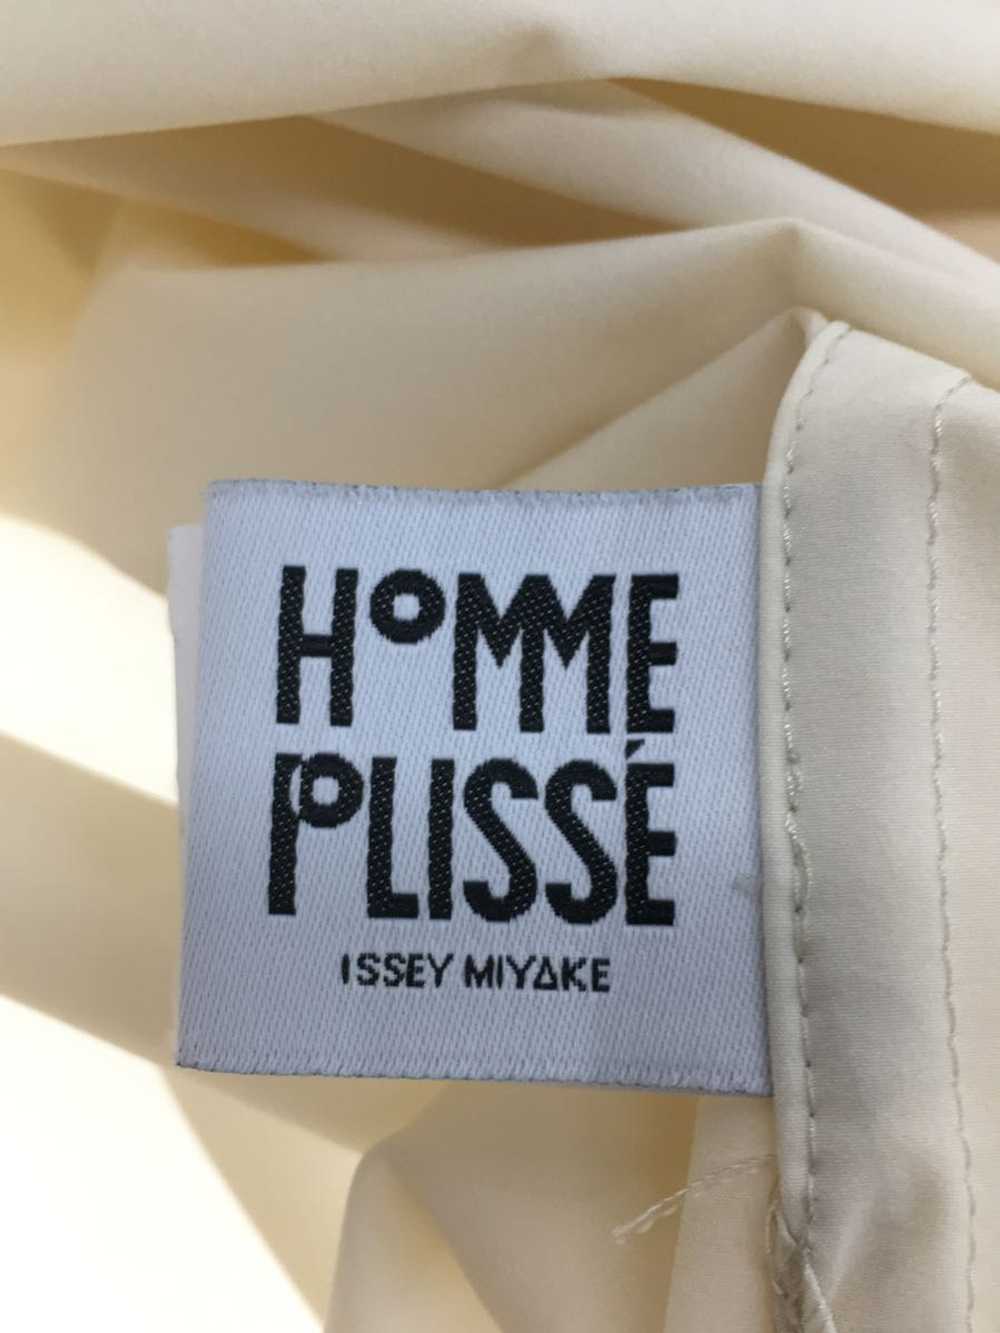 Used Homme Plisse Issey Miyake Long Shirt/3/Polye… - image 3